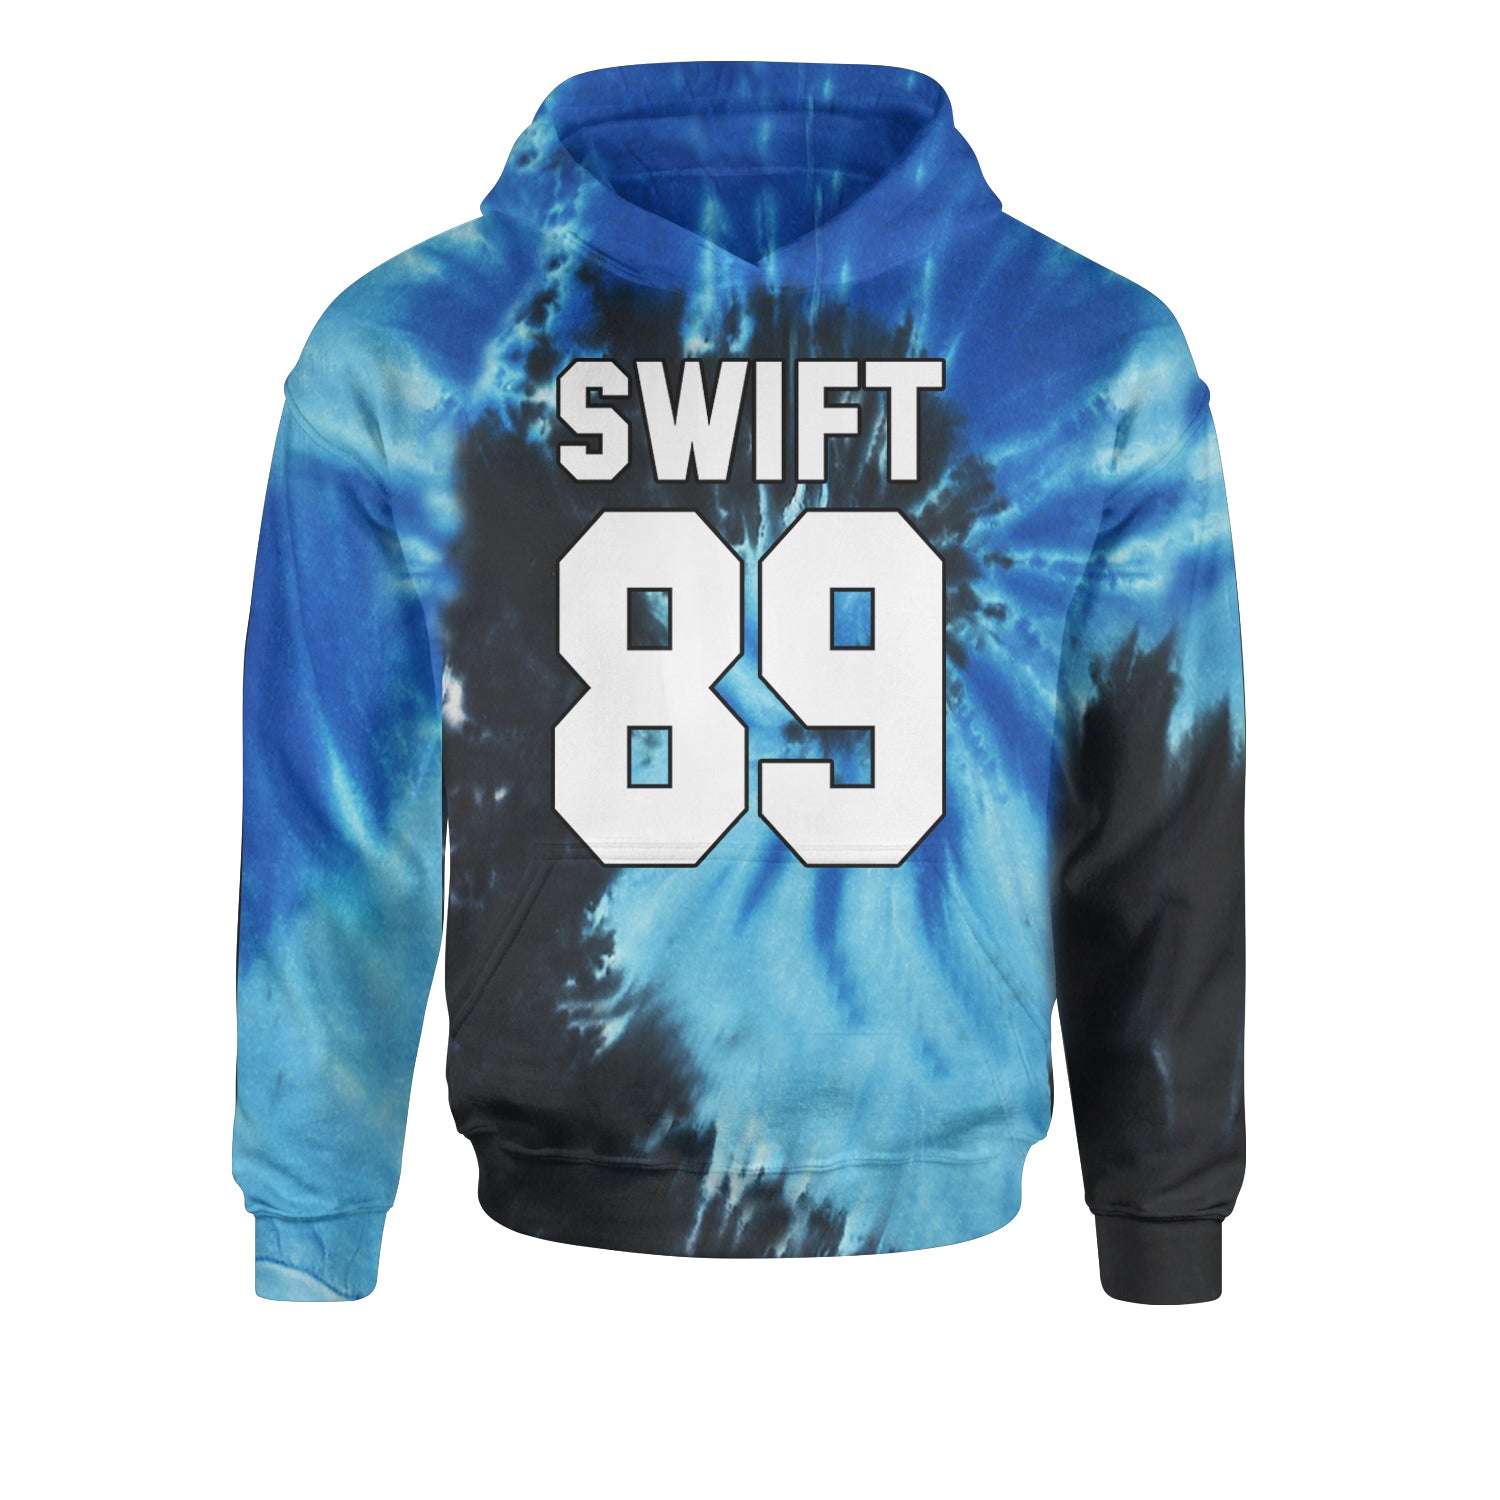 Swift 89 Birth Year Music Fan Era Poets Department Lover Youth-Sized Hoodie Tie-Dye Blue Ocean